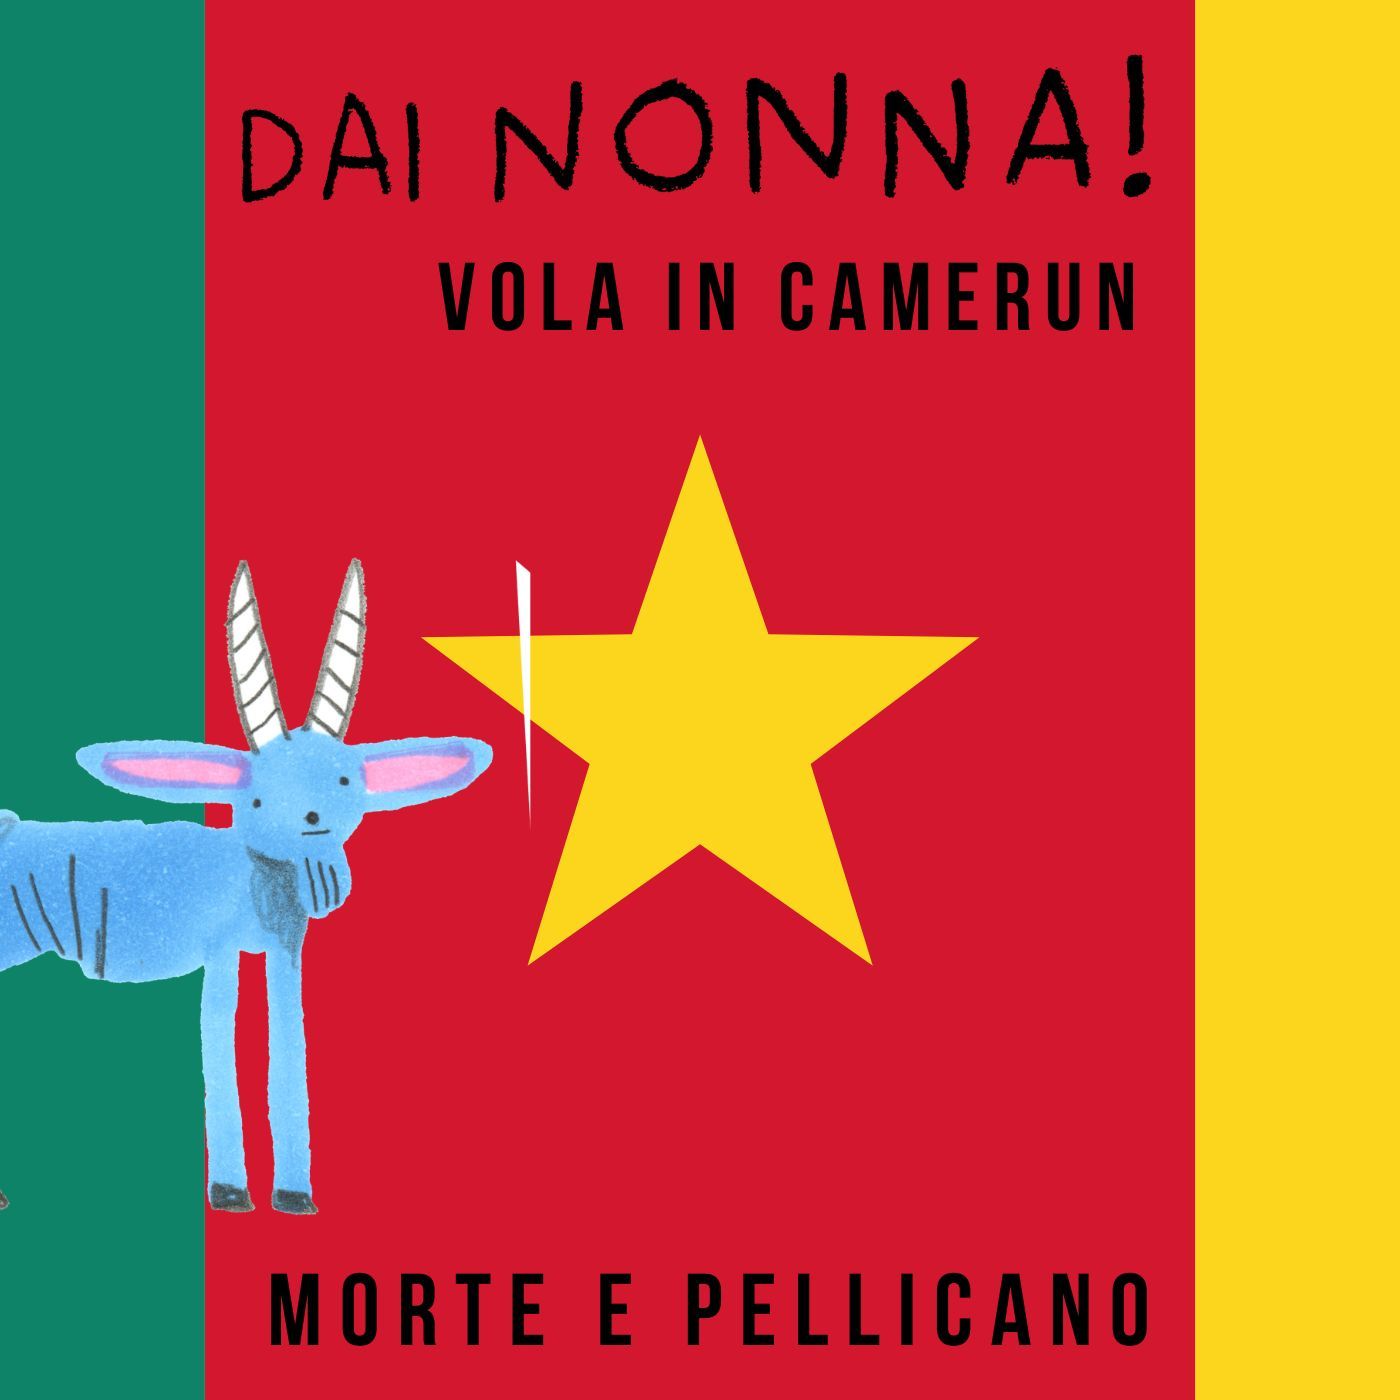 Morte e Pellicano - DN vola in Camerun